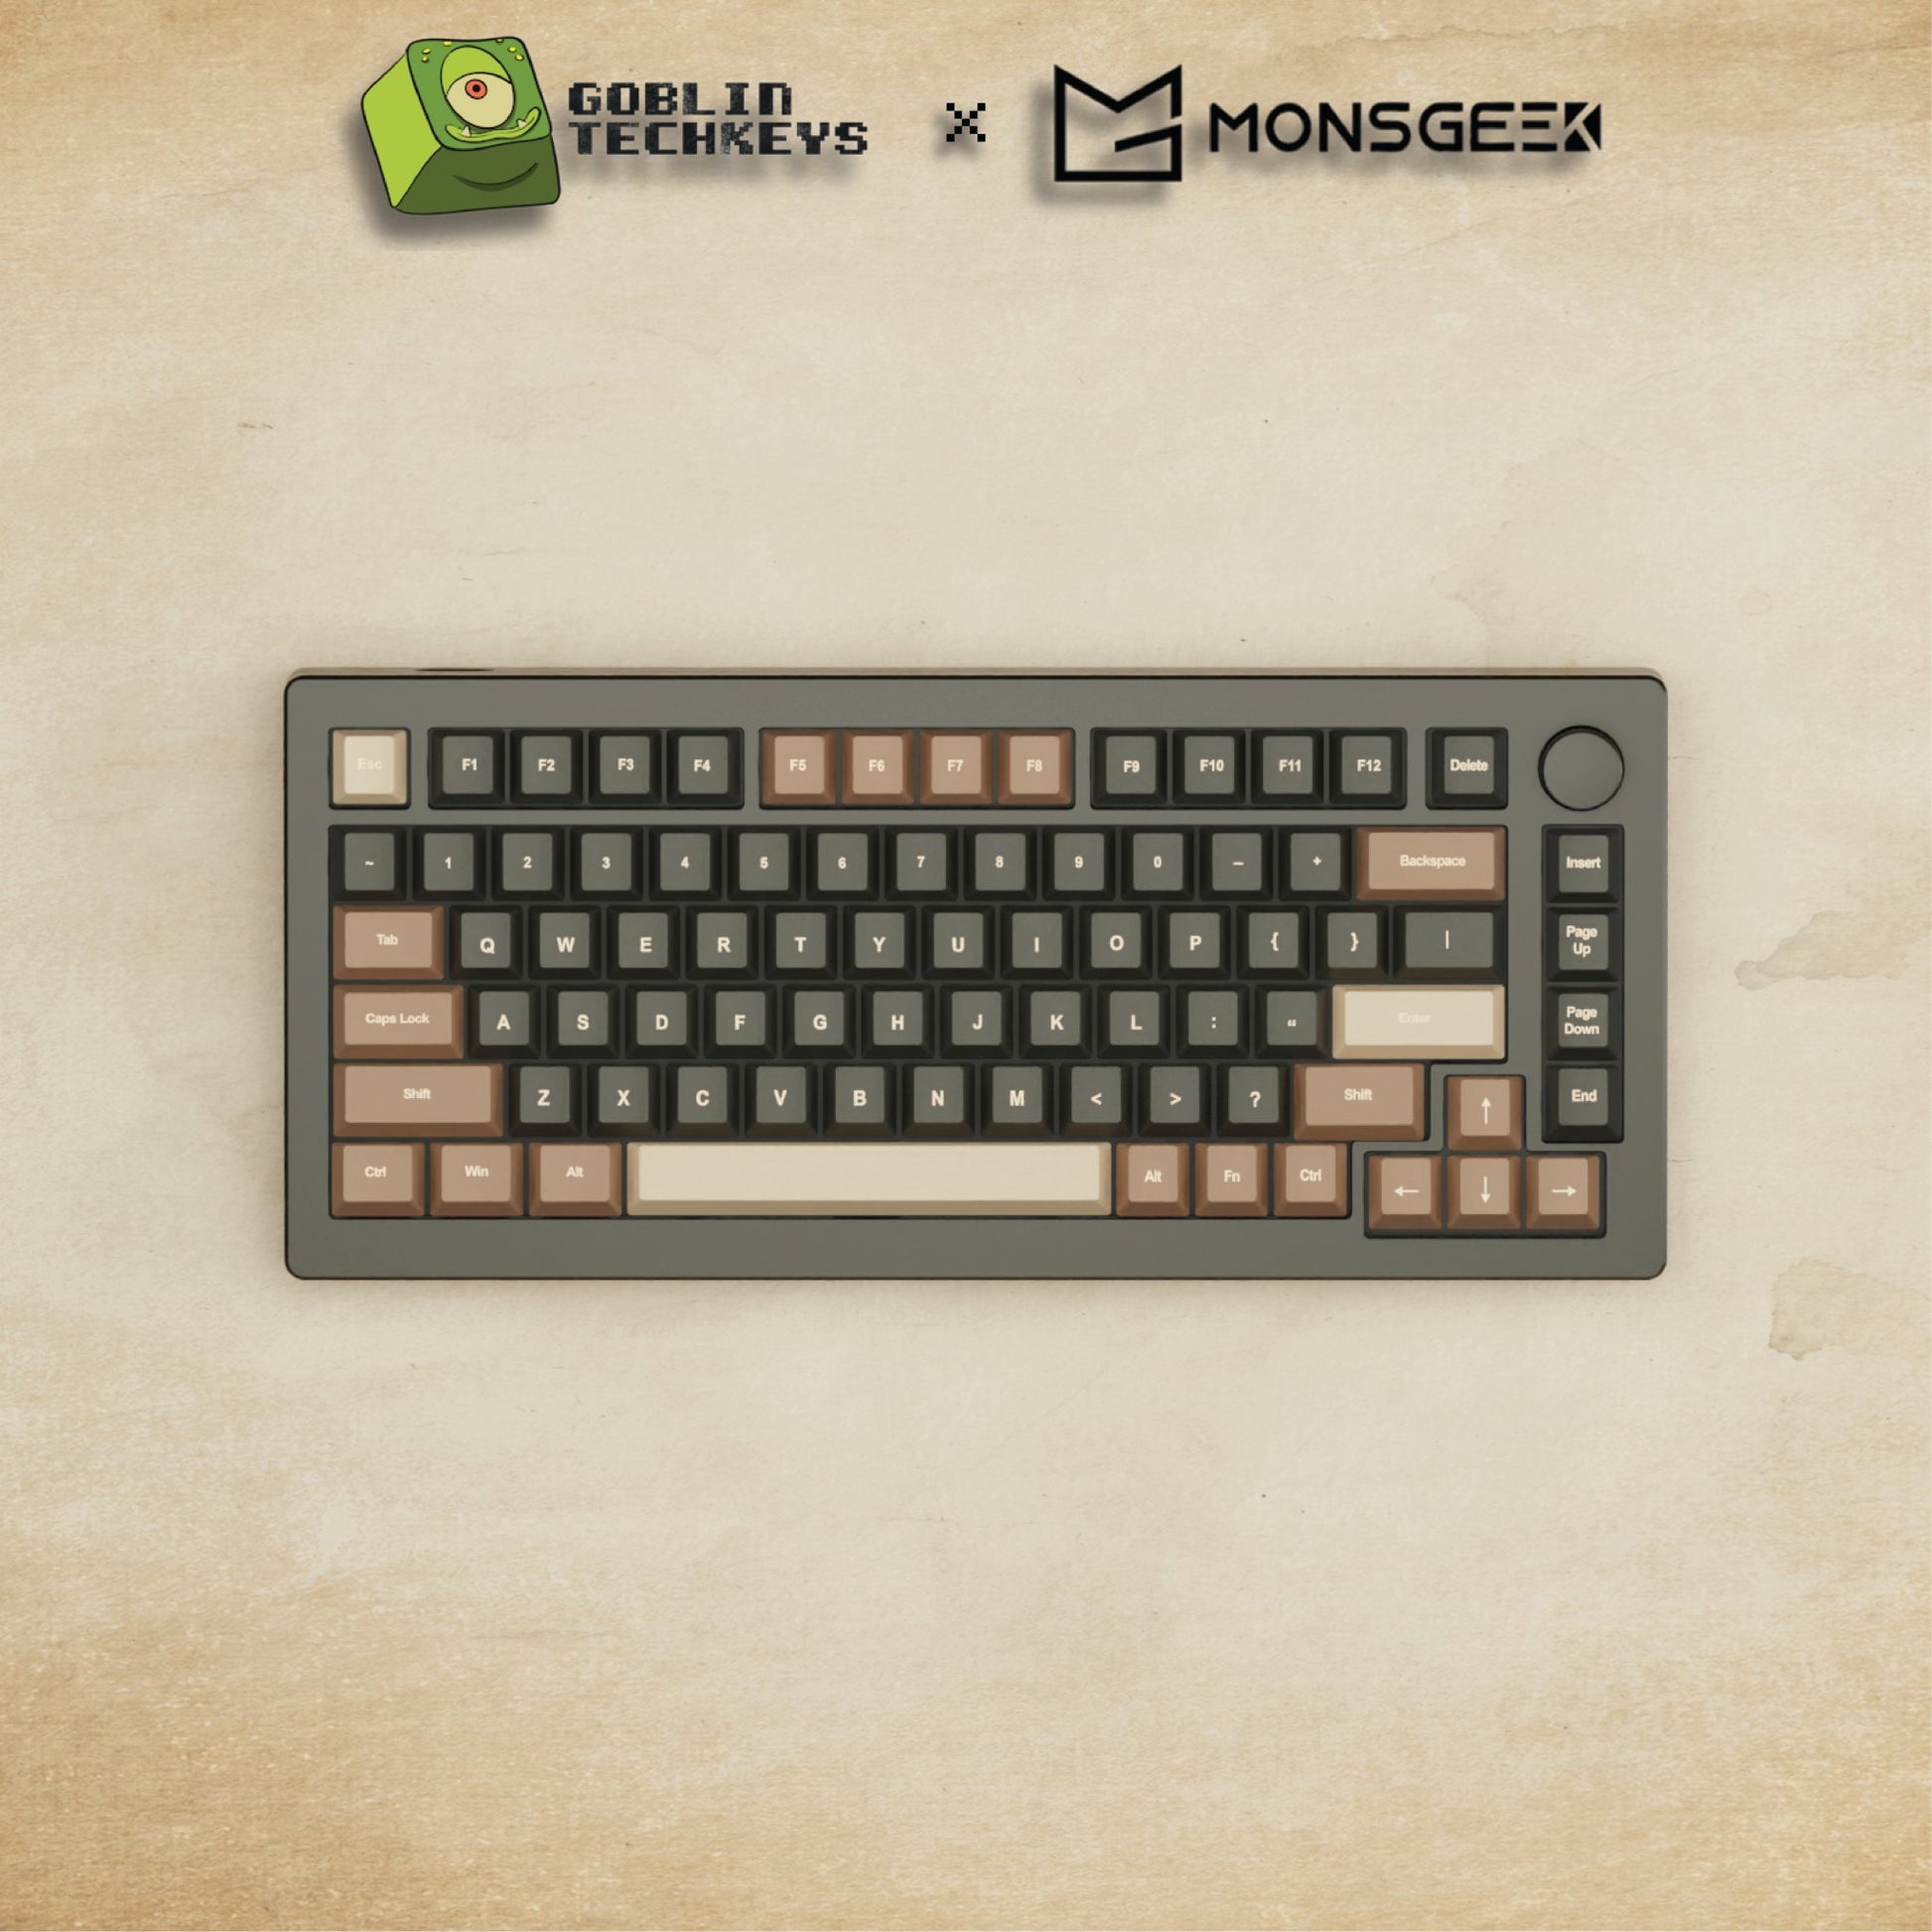 Monsgeek M1W - 75% 3D rendering [Coffee] Mechanical Keyboard - Goblintechkeys